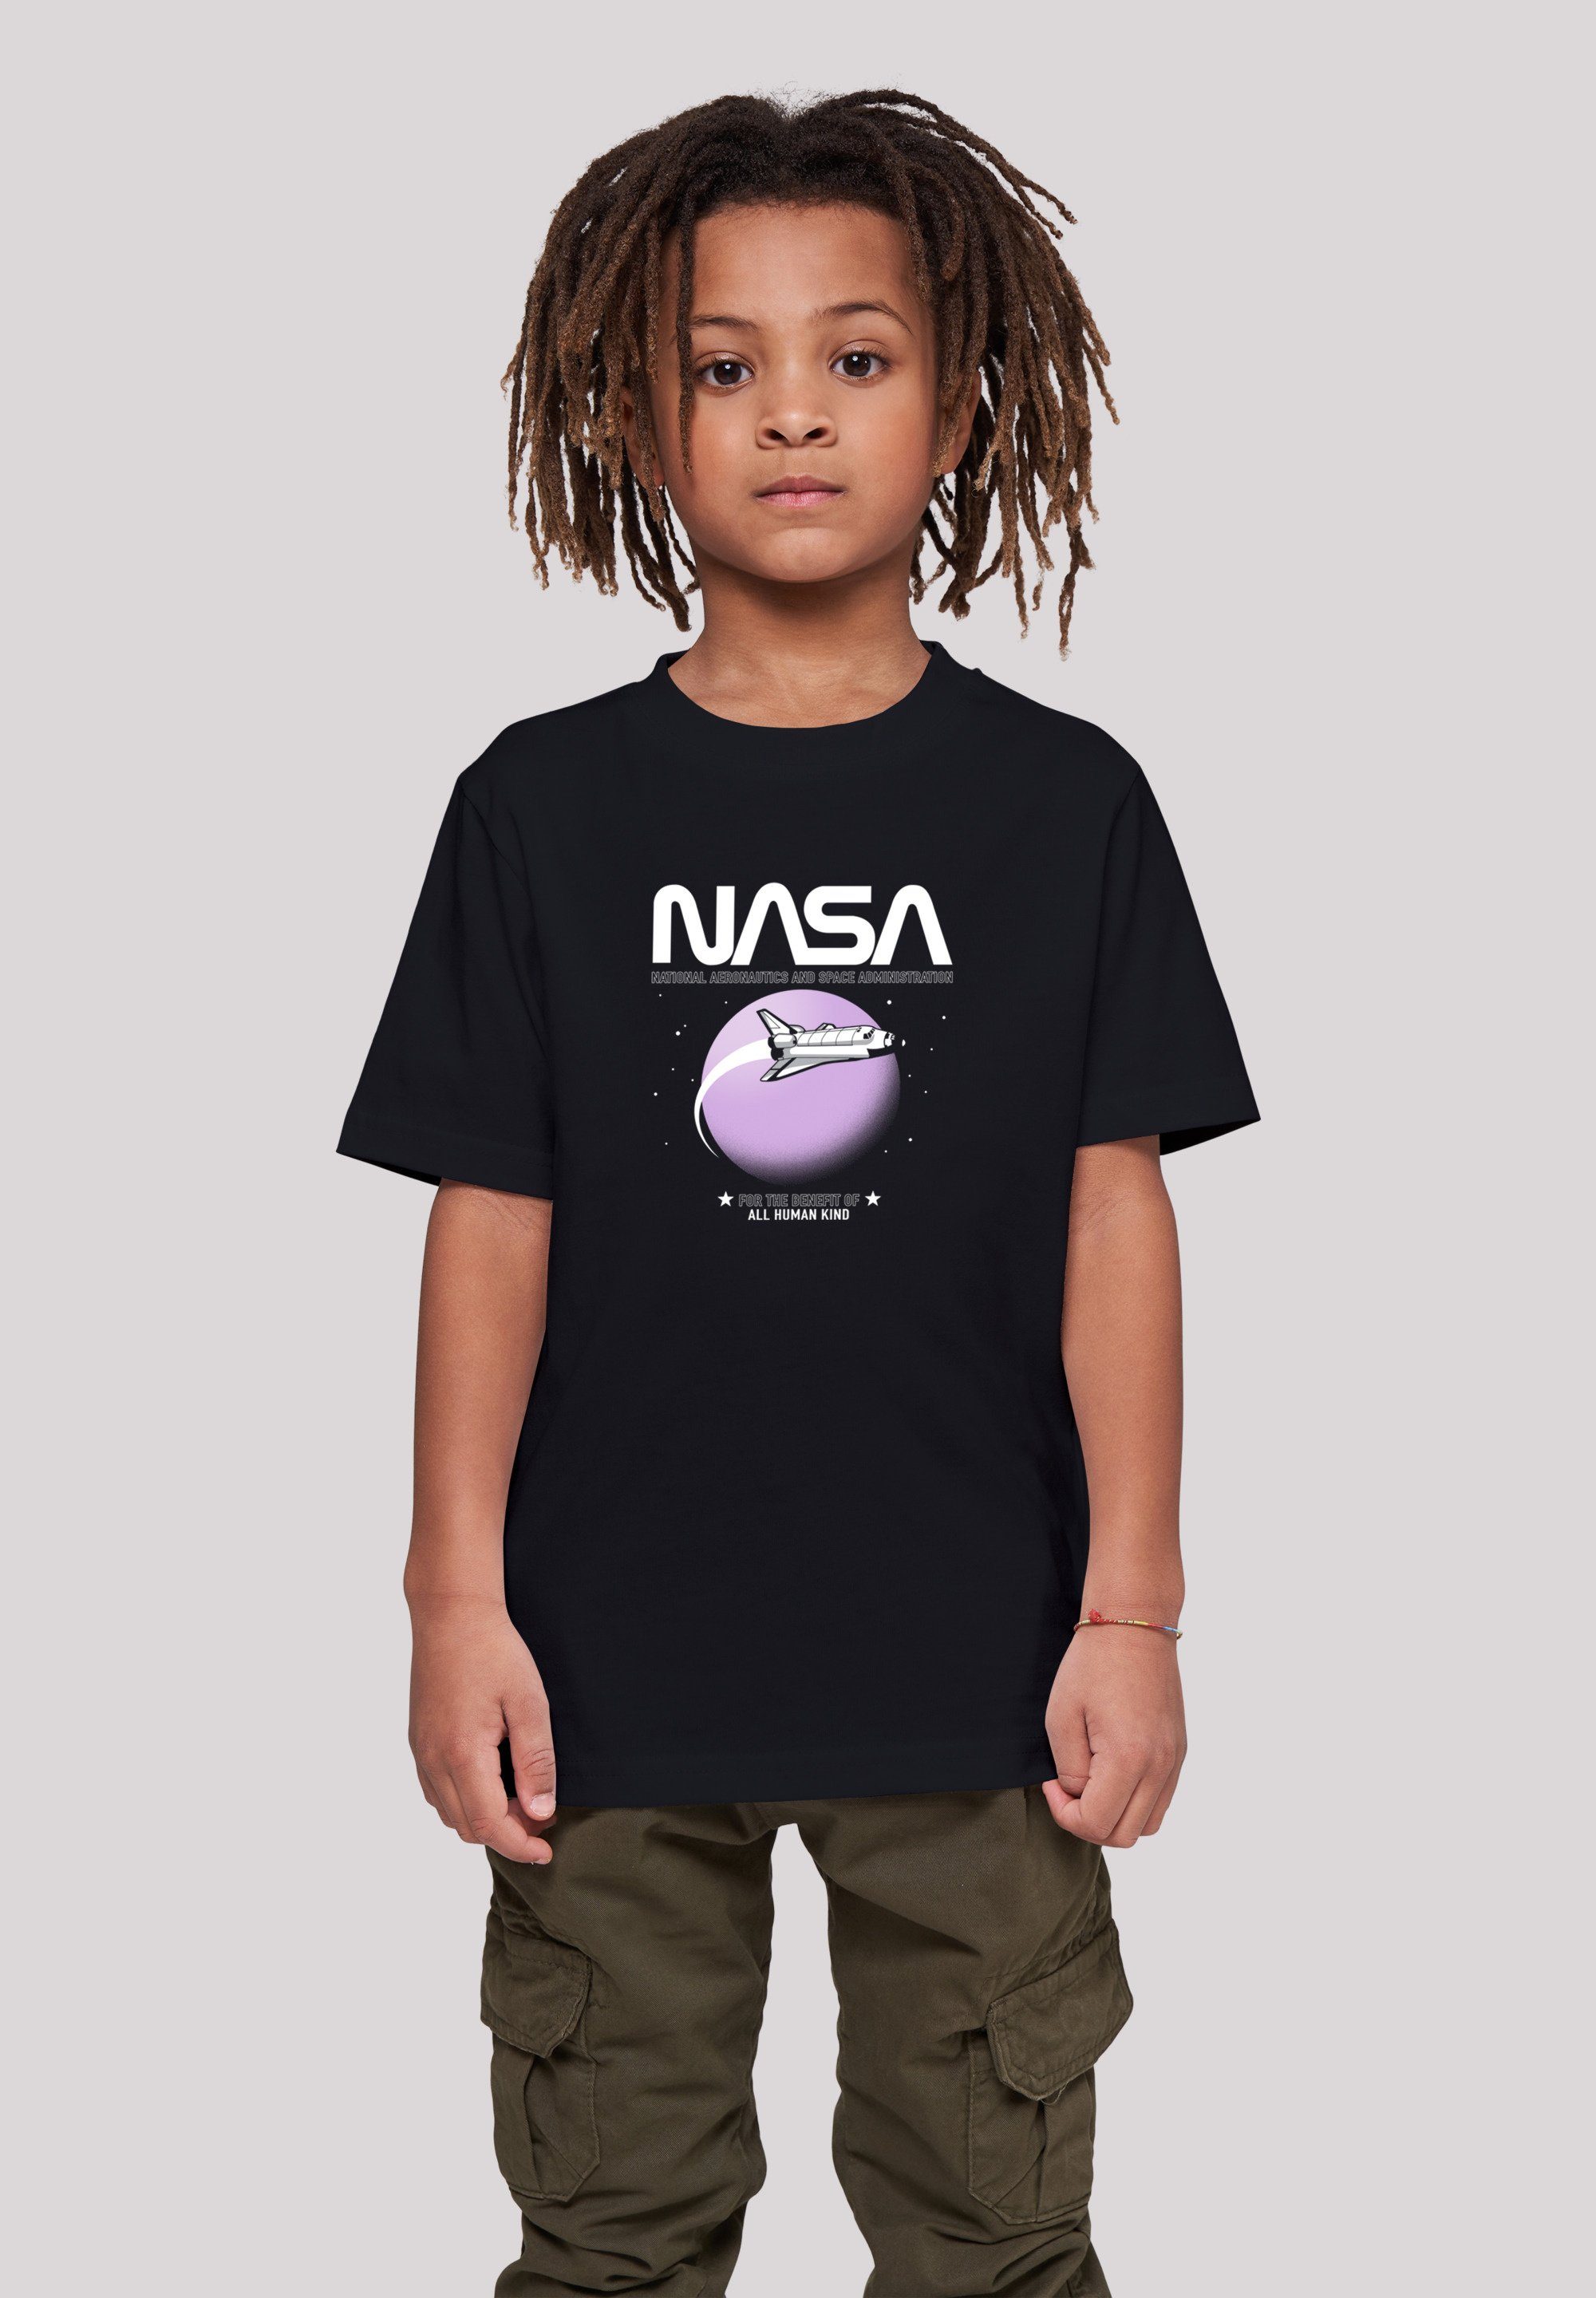 Shuttle Orbit Kinder,Premium T-Shirt Unisex Merch,Jungen,Mädchen,Bedruckt NASA F4NT4STIC